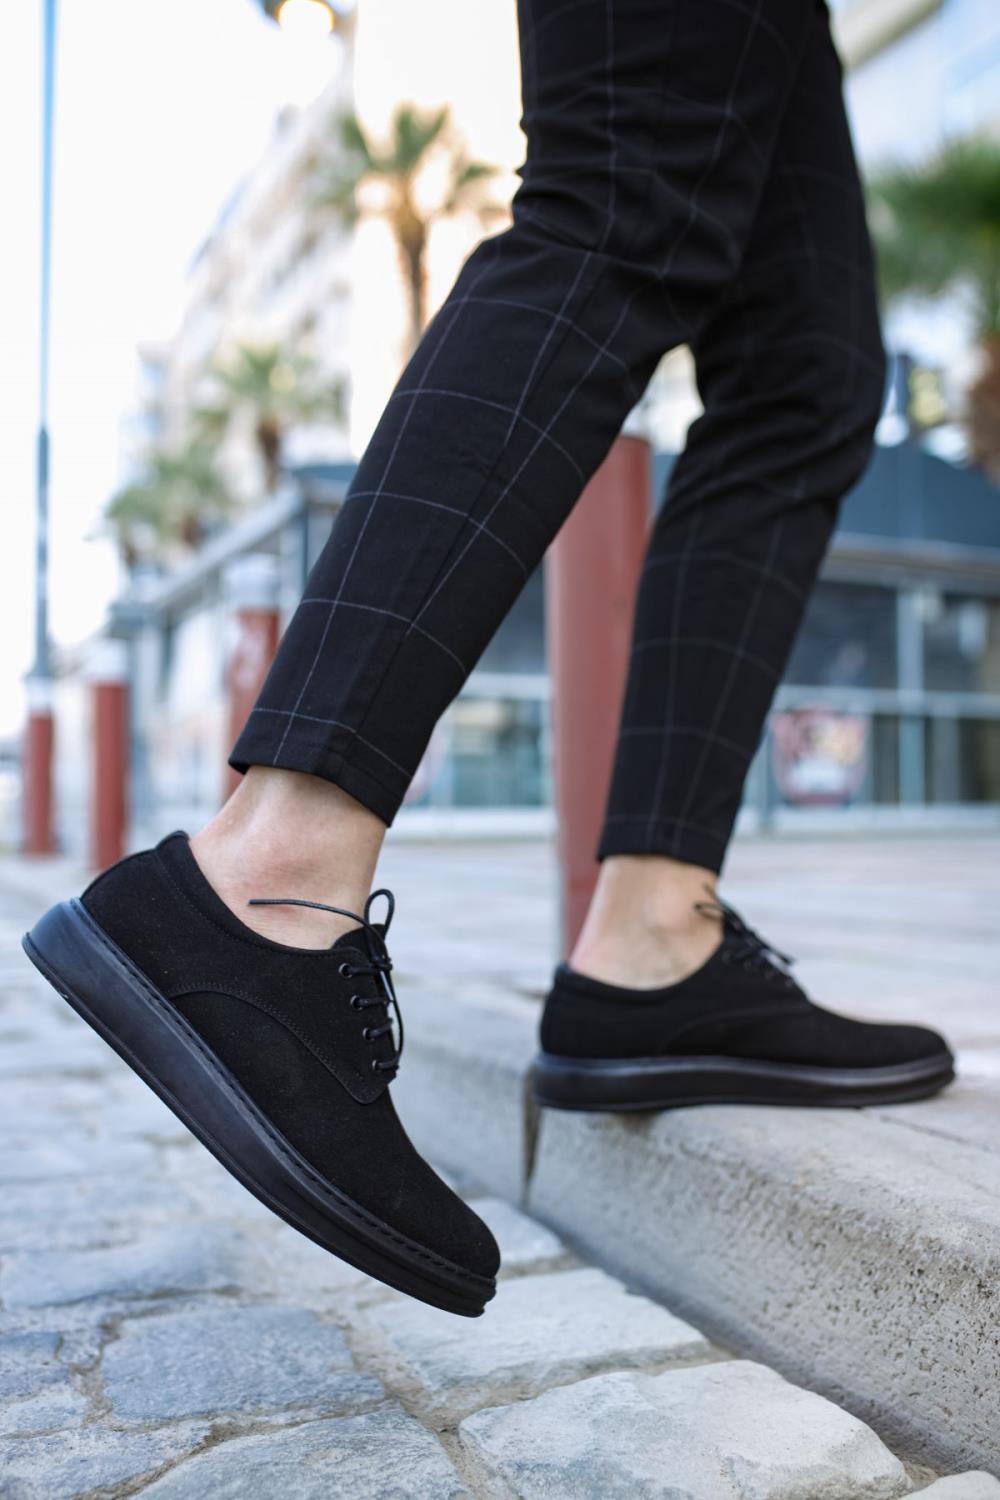 CLZ941  Klasik Erkek Ayakkabı  Siyah Süet (Siyah Taban)